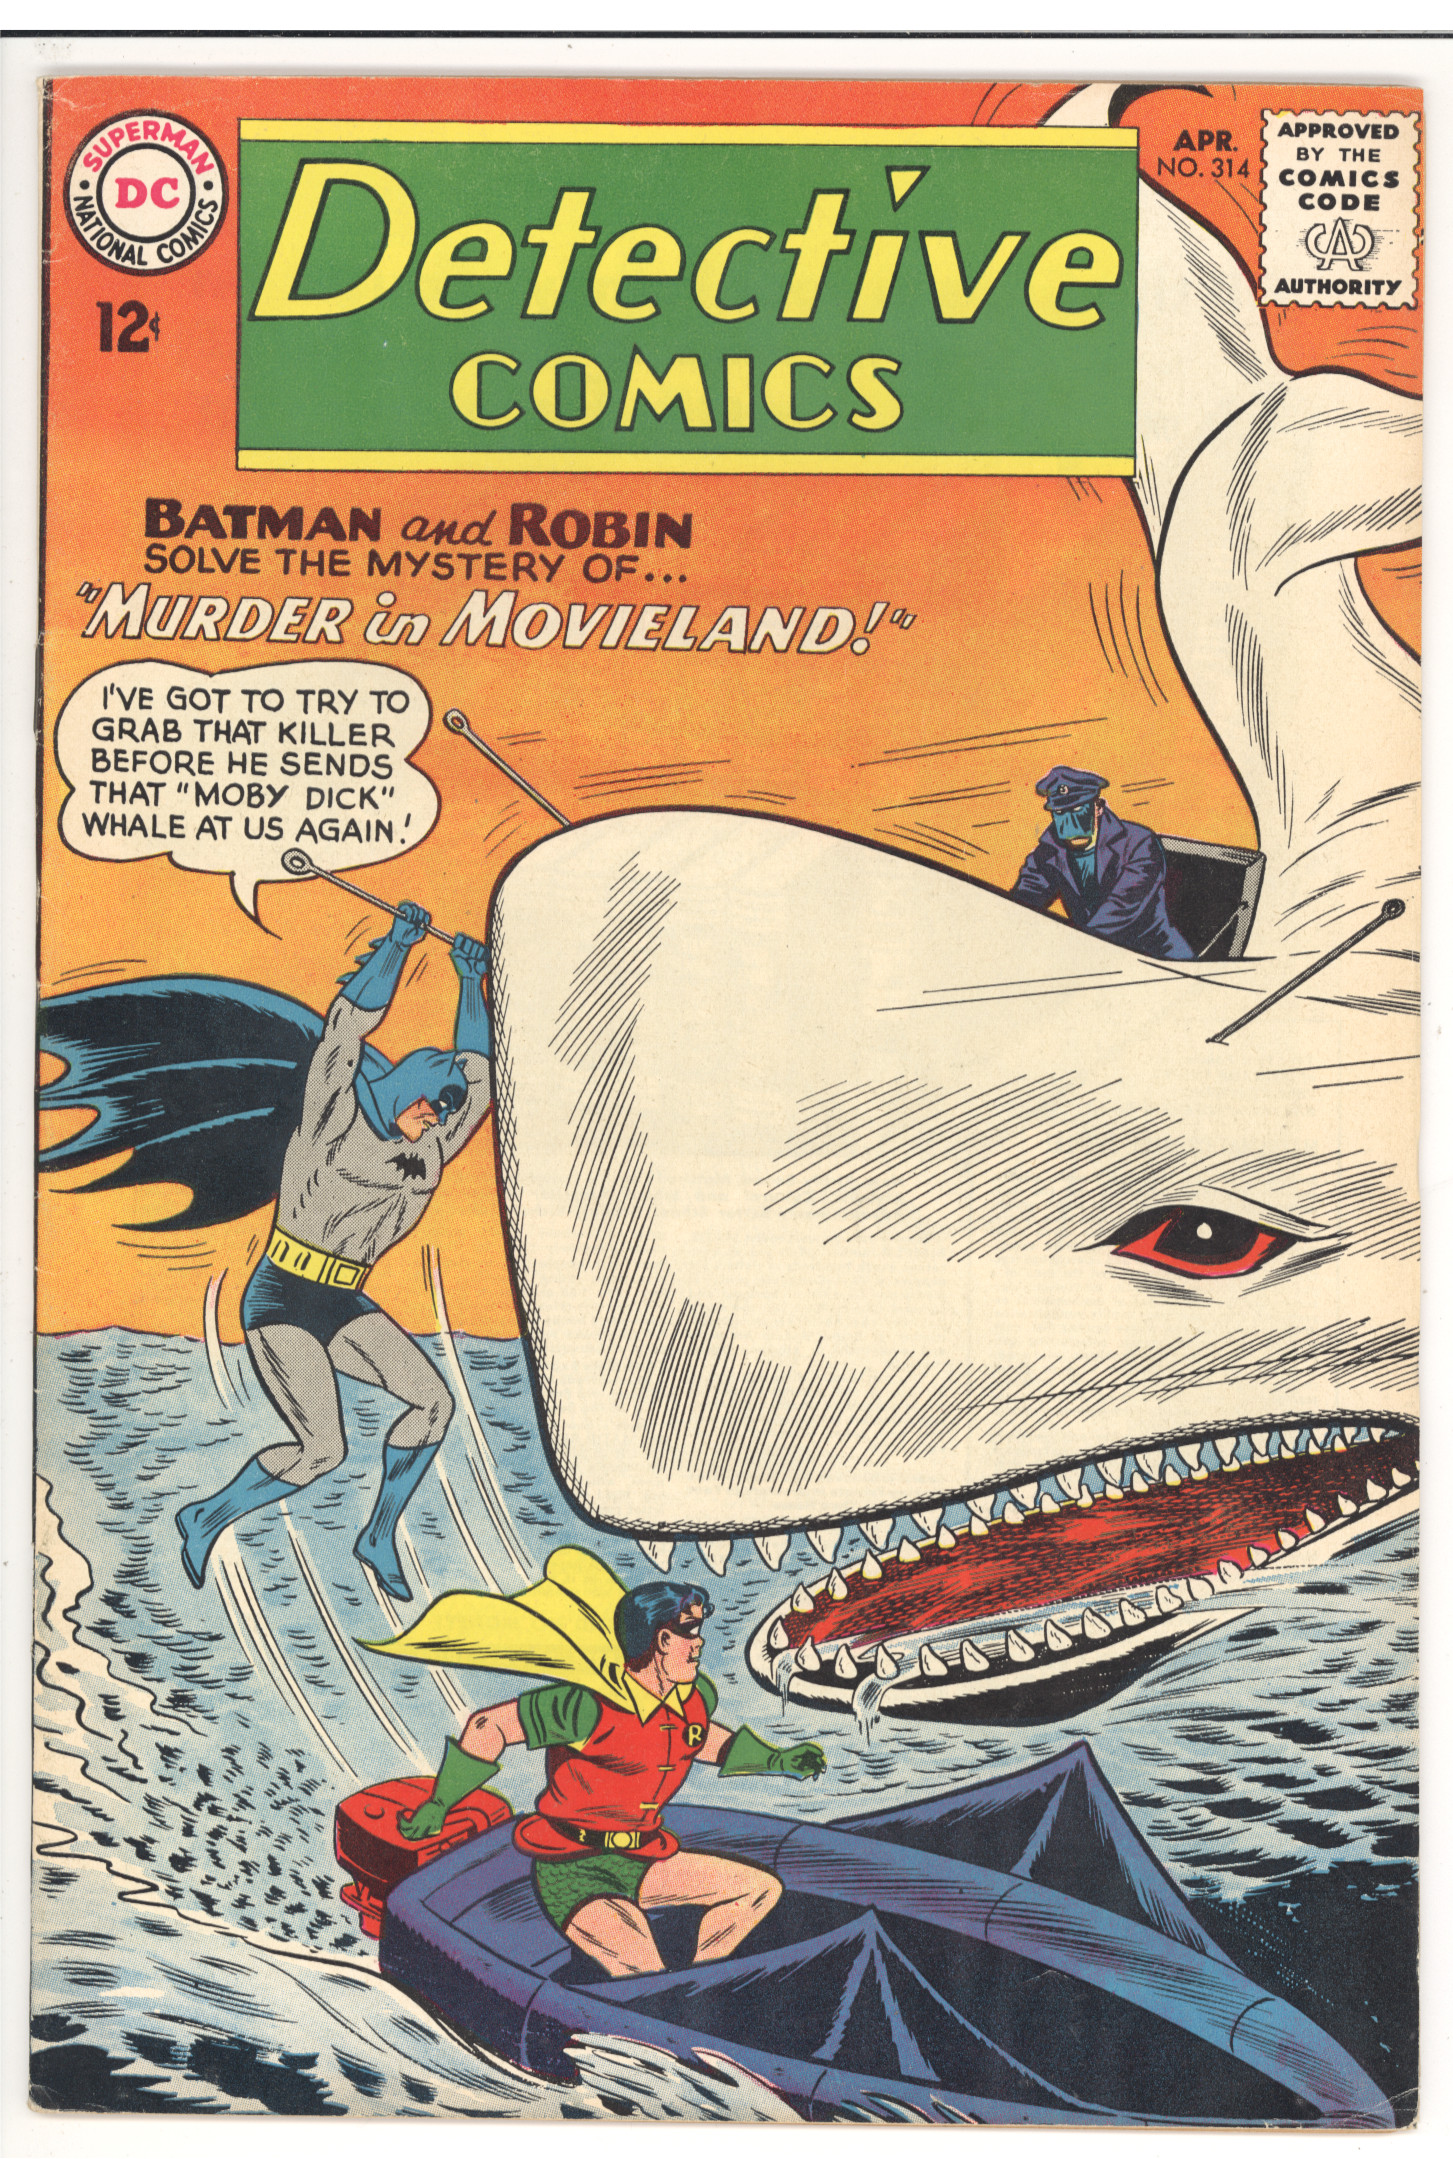 Detective Comics #314 front